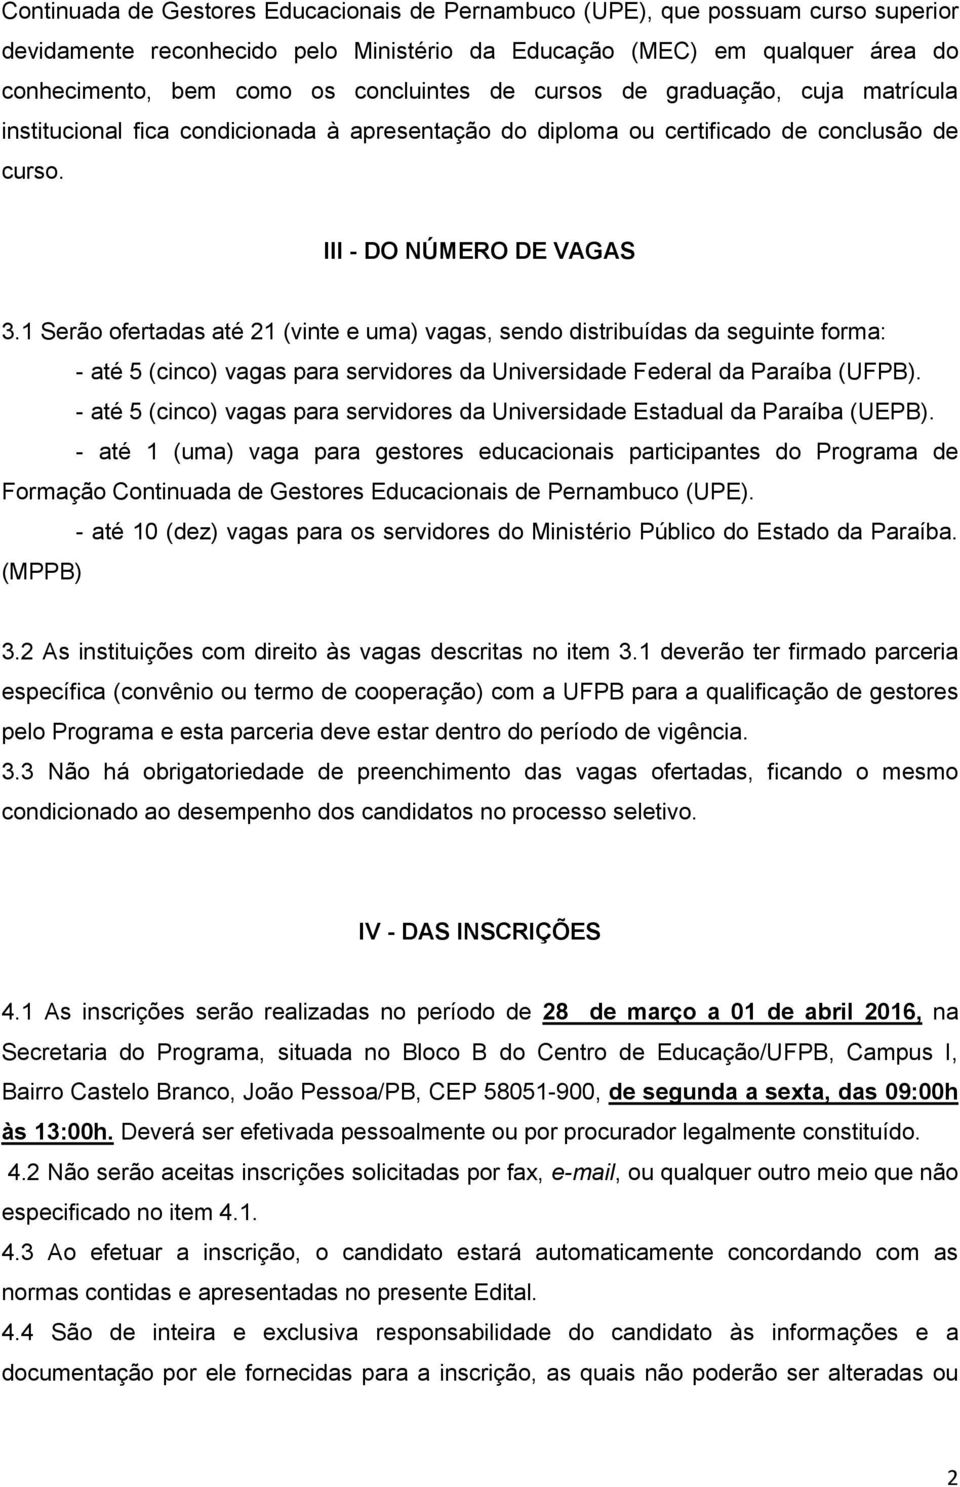 1 Serão ofertadas até 21 (vinte e uma) vagas, sendo distribuídas da seguinte forma: - até 5 (cinco) vagas para servidores da Universidade Federal da Paraíba (UFPB).